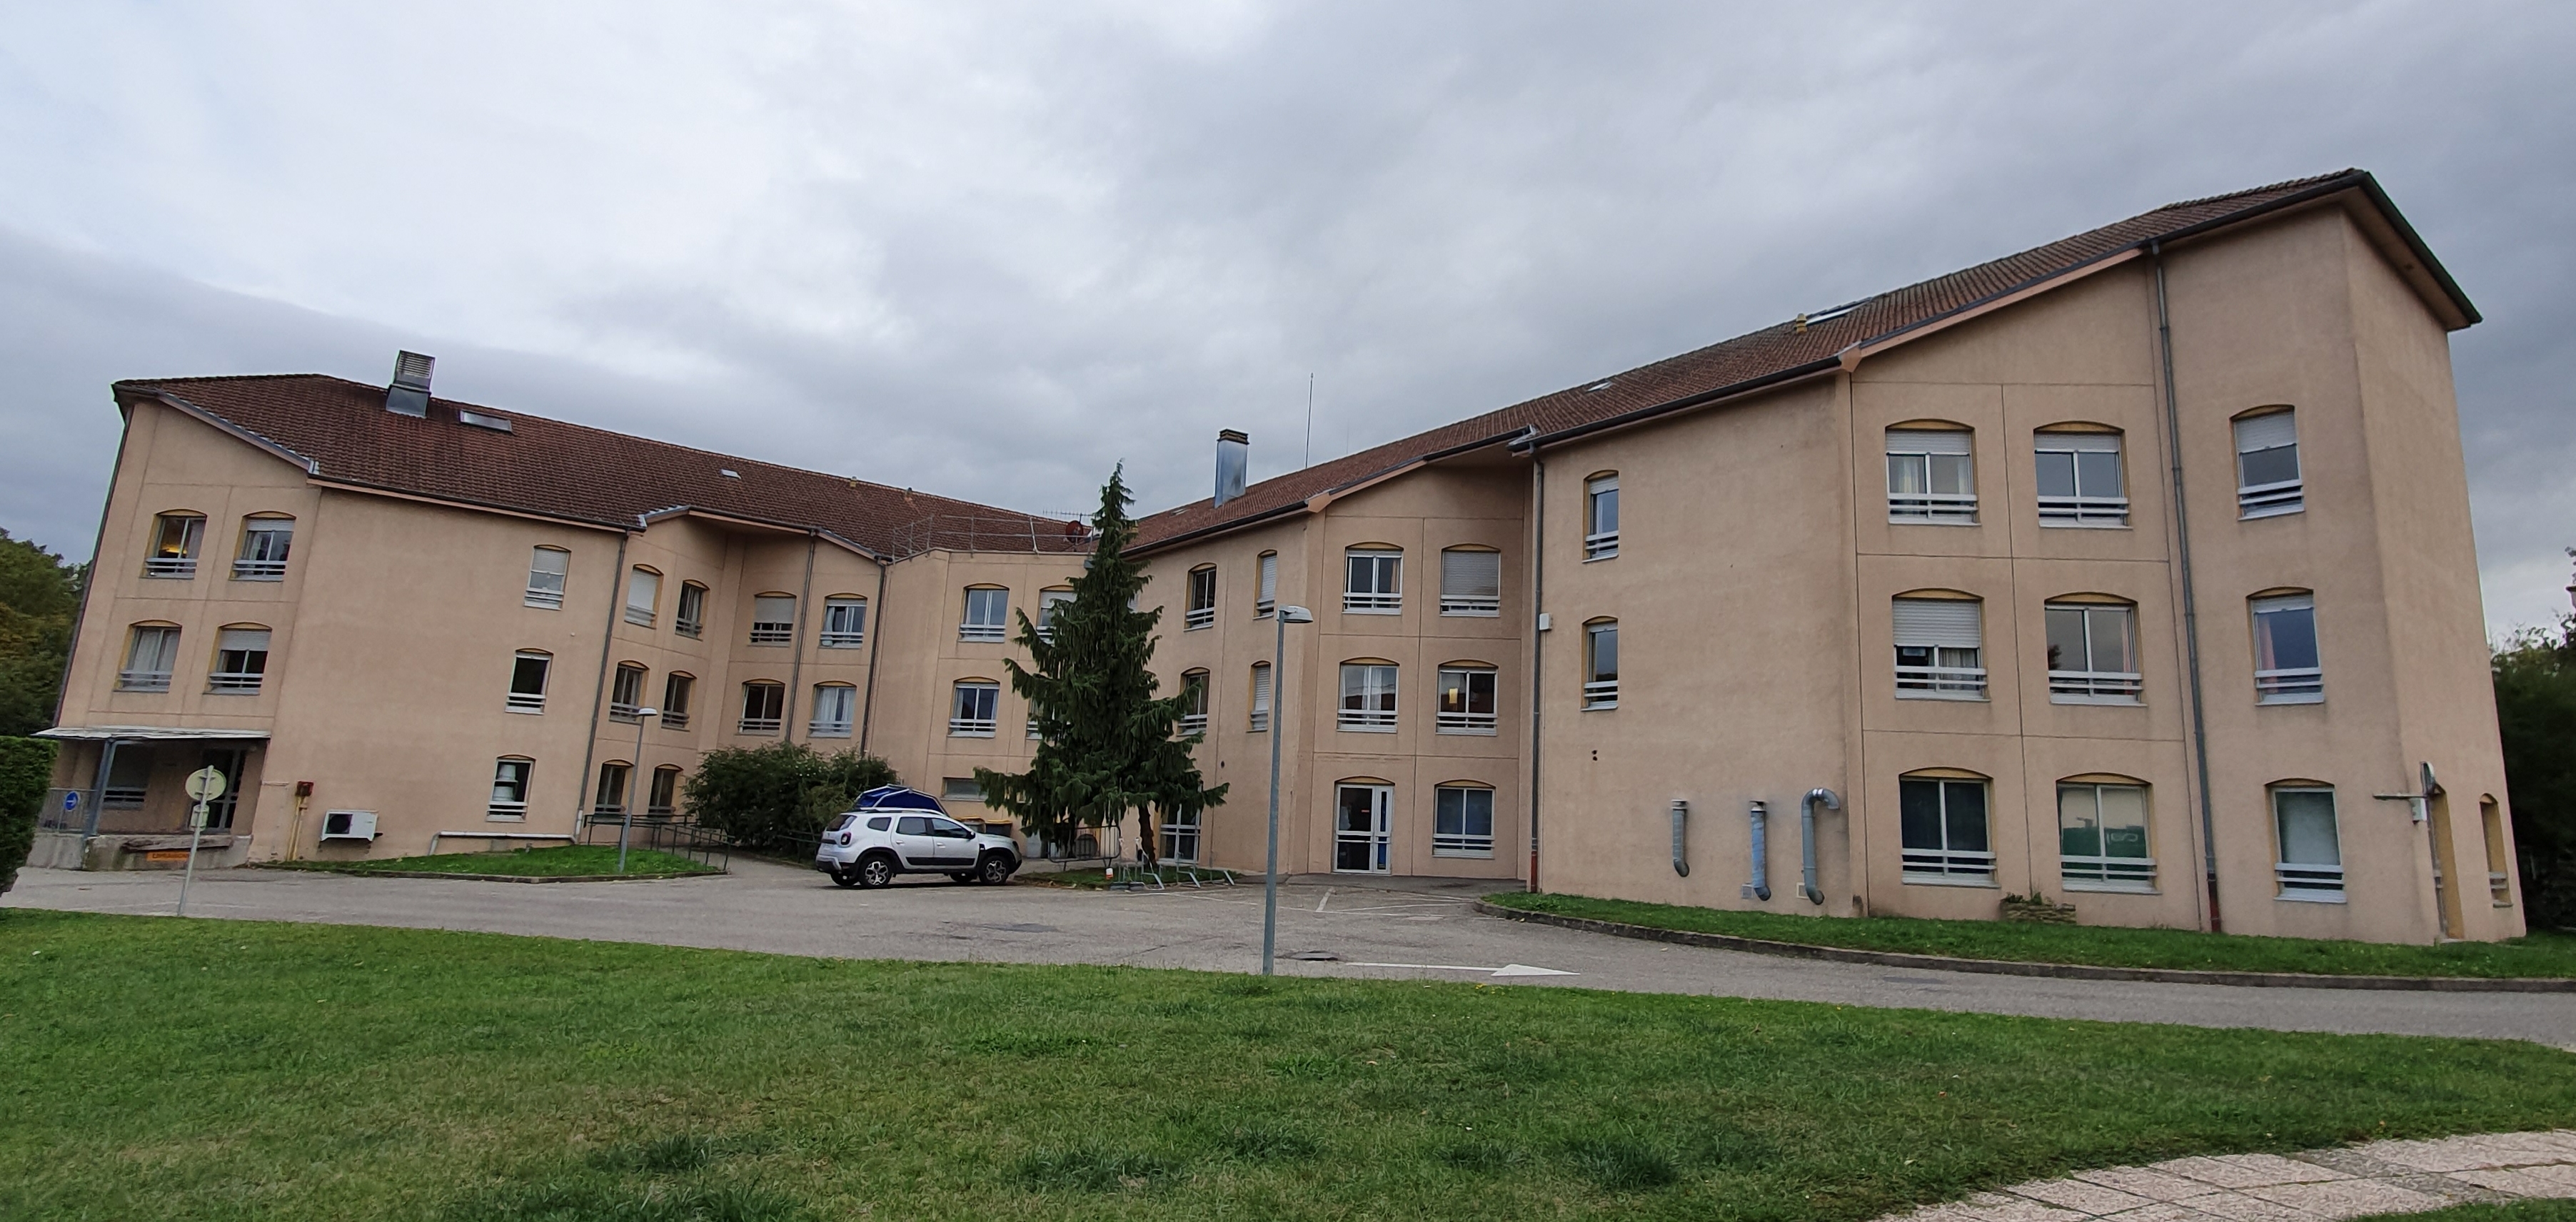 Photo #8 de Groupement hospitalier de la région de Mulhouse